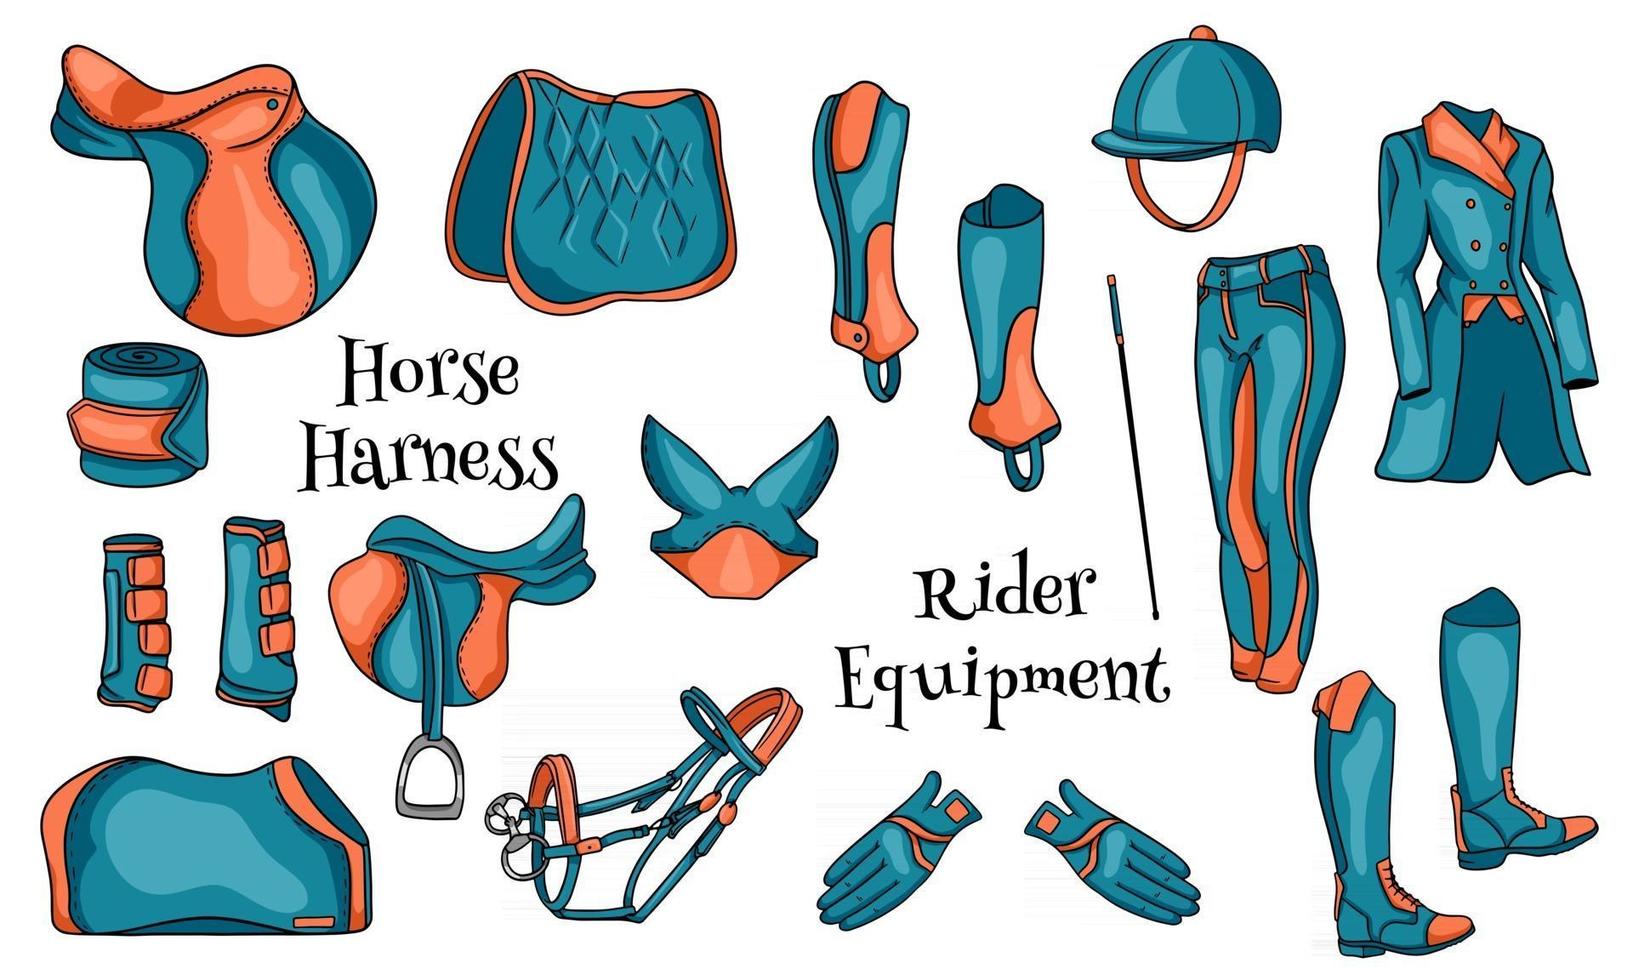 grand ensemble d'équipements pour le cavalier et de munitions pour l'illustration du cheval en dessin animé vecteur